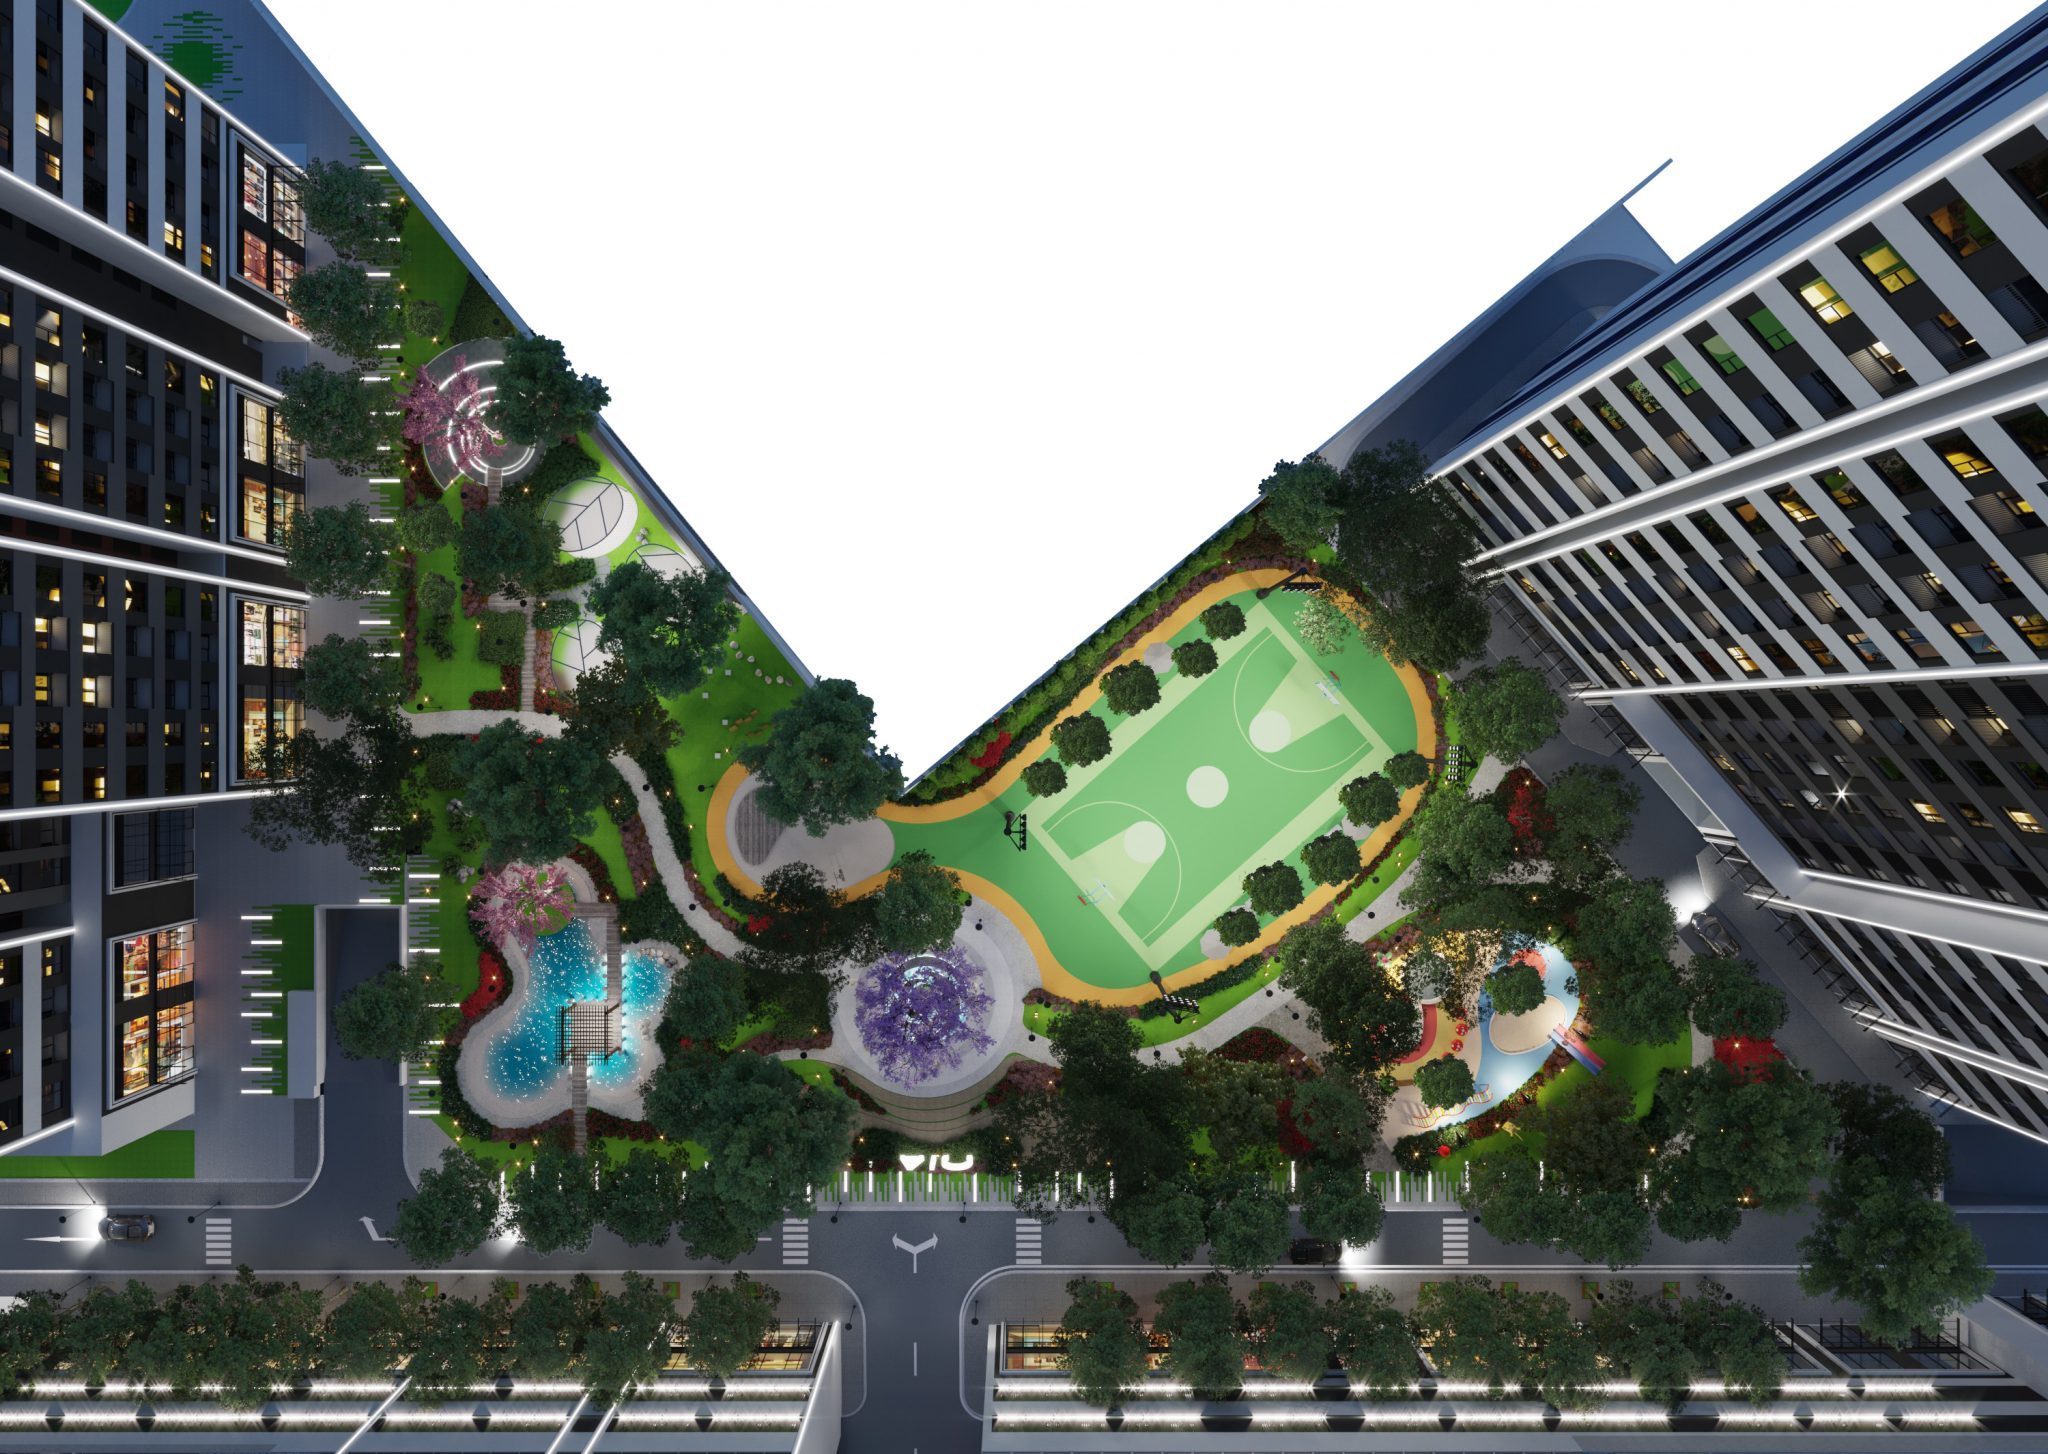 Chi tiết dự án căn hộ Aio City Bình Tân từ A – Z